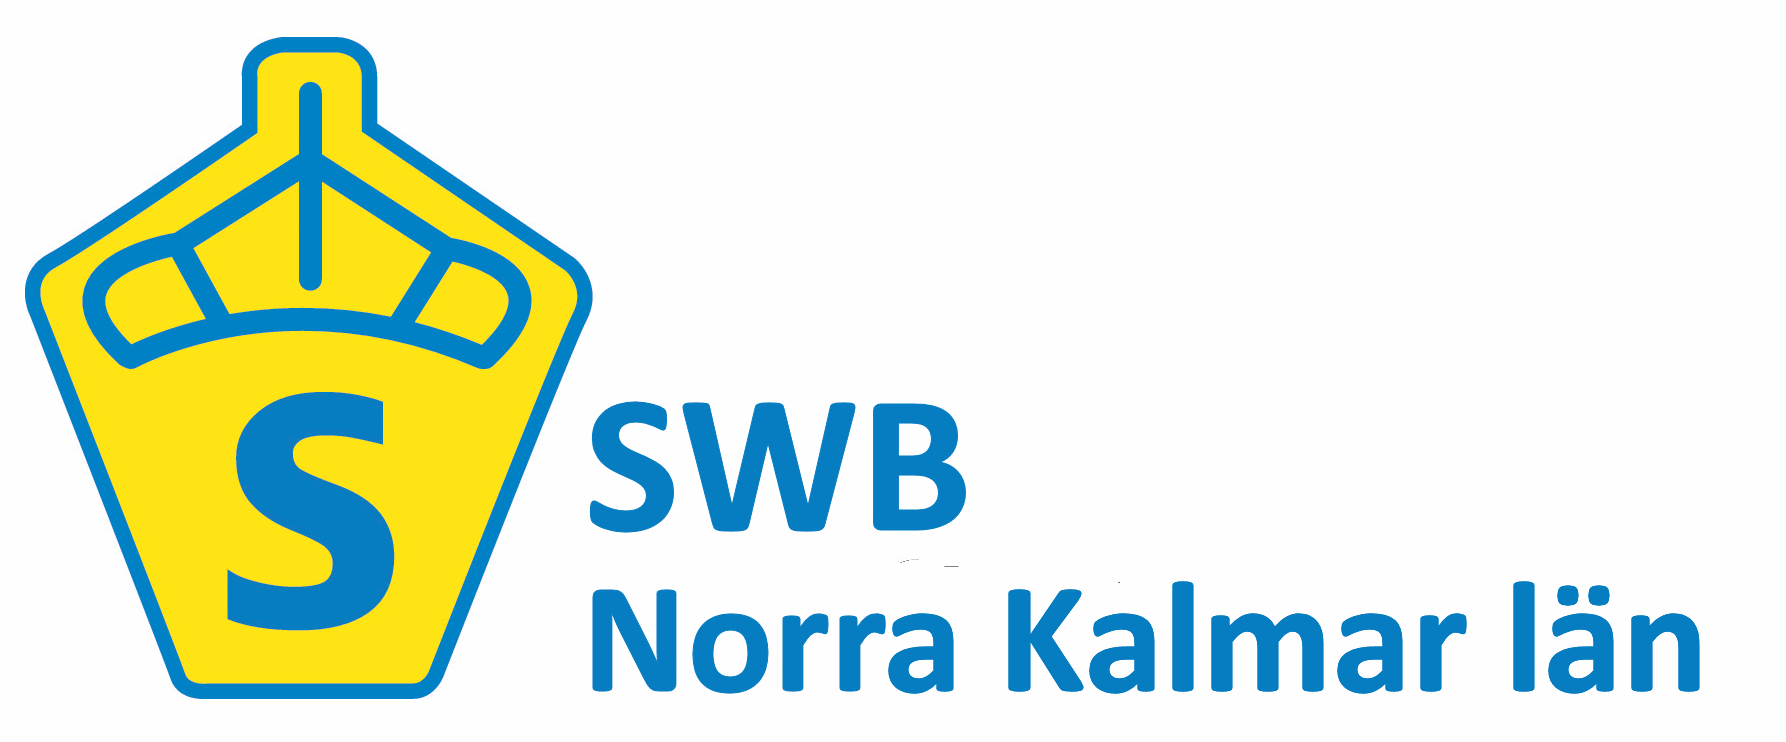 SWB NKL